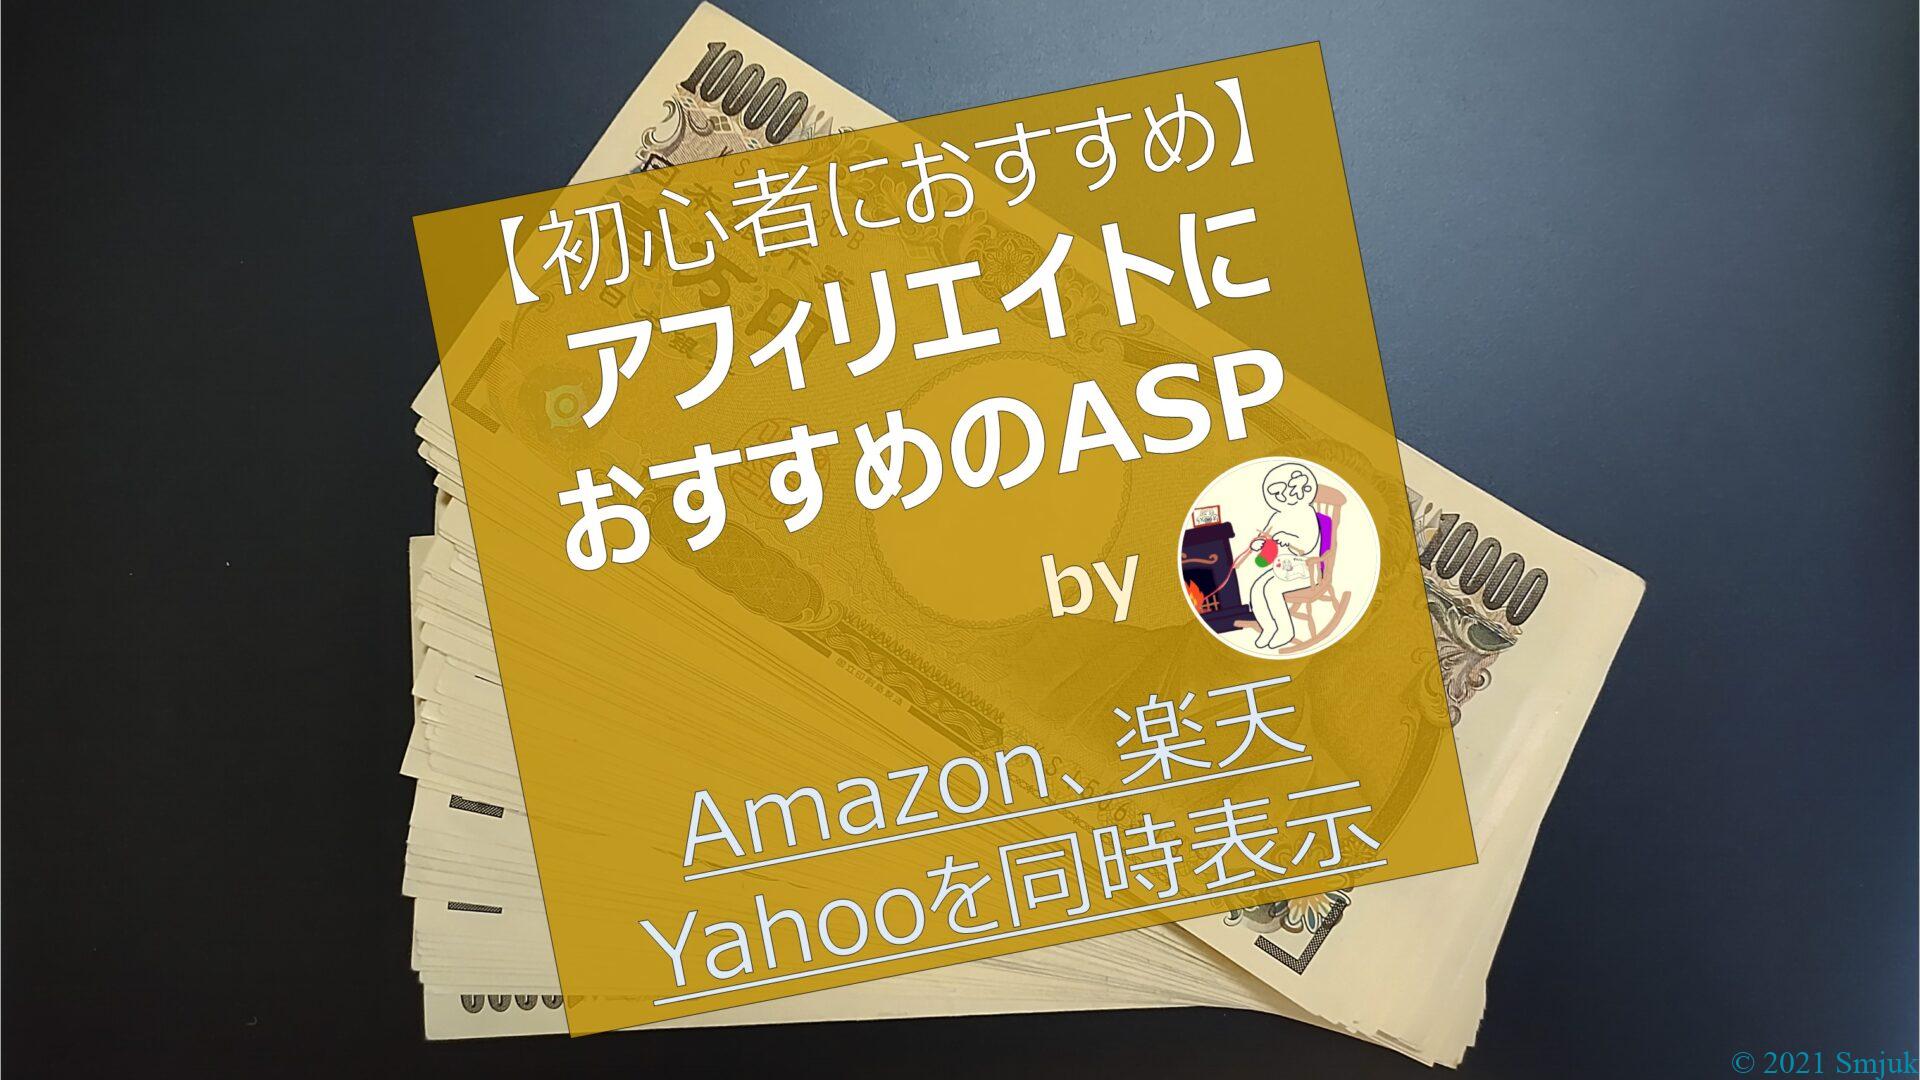 【初心者にオススメ】アフィリエイトのおすすめASP2選【Amazon・楽天・Yahoo!を同時に表示できるASPも紹介】